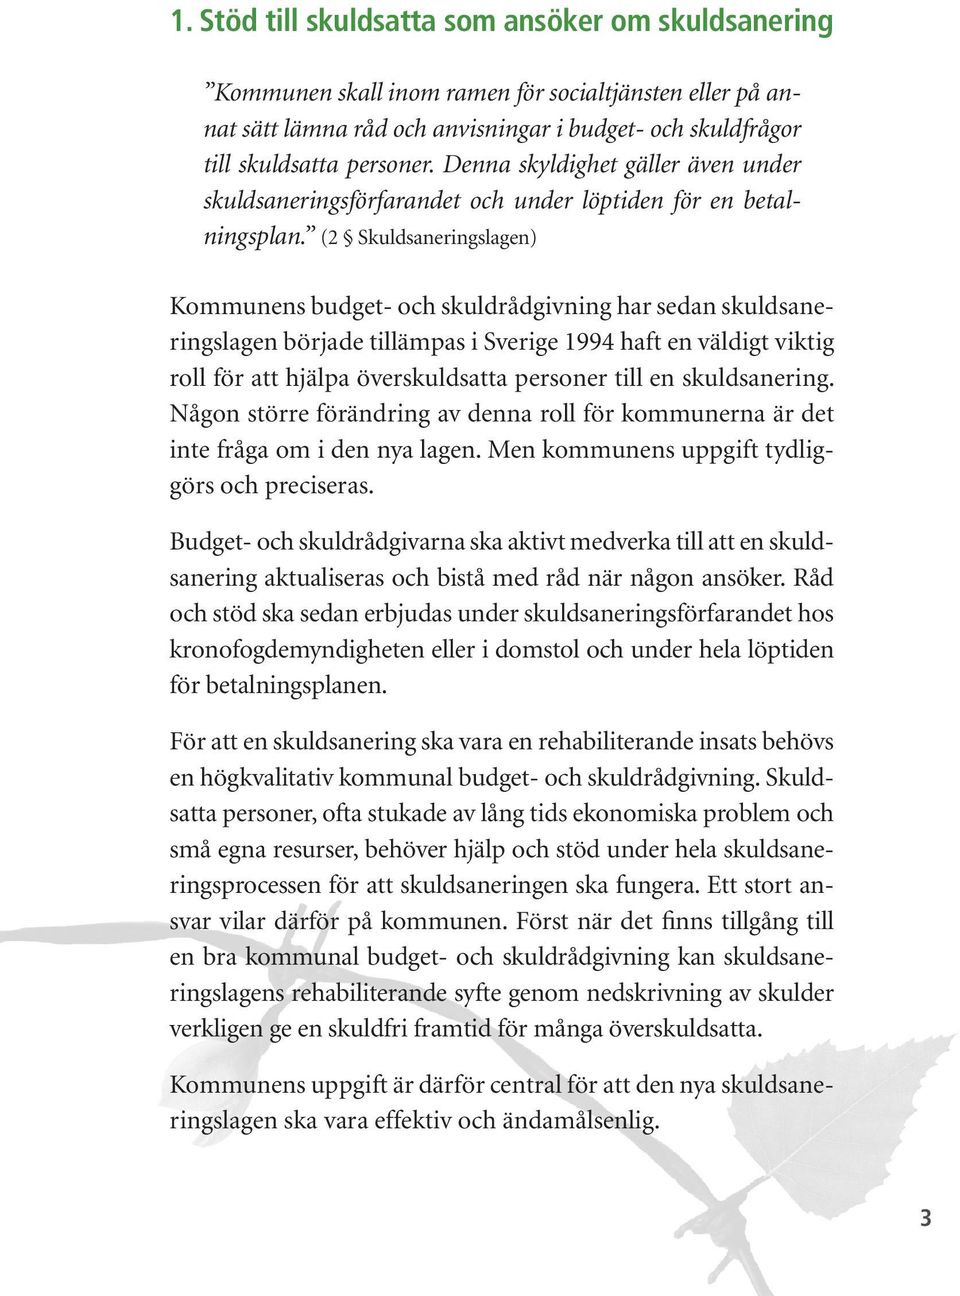 (2 Skuldsaneringslagen) Kommunens budget- och skuldrådgivning har sedan skuldsaneringslagen började tillämpas i Sverige 1994 haft en väldigt viktig roll för att hjälpa överskuldsatta personer till en